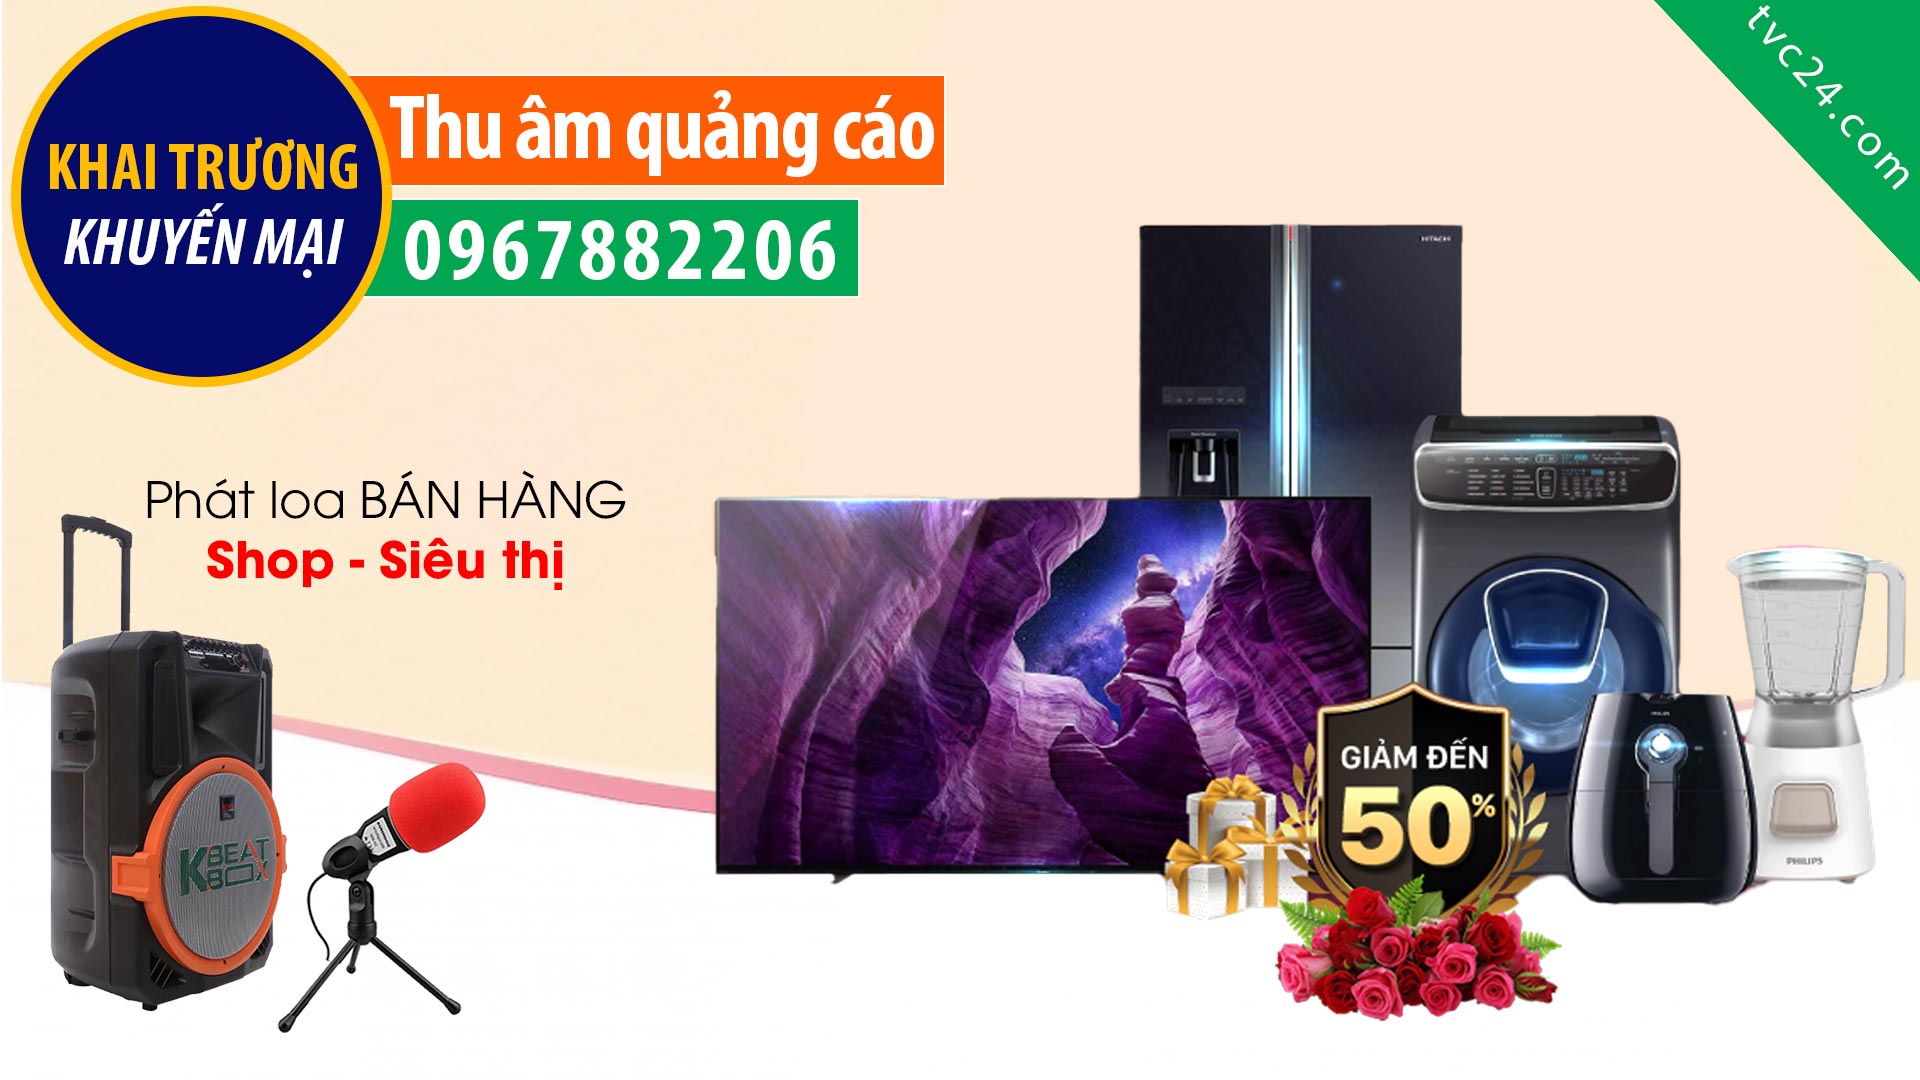 Thu âm quảng cáo điện máy Tiến Giang TVC24 đọc Khuyến mại phát loa bán hàng